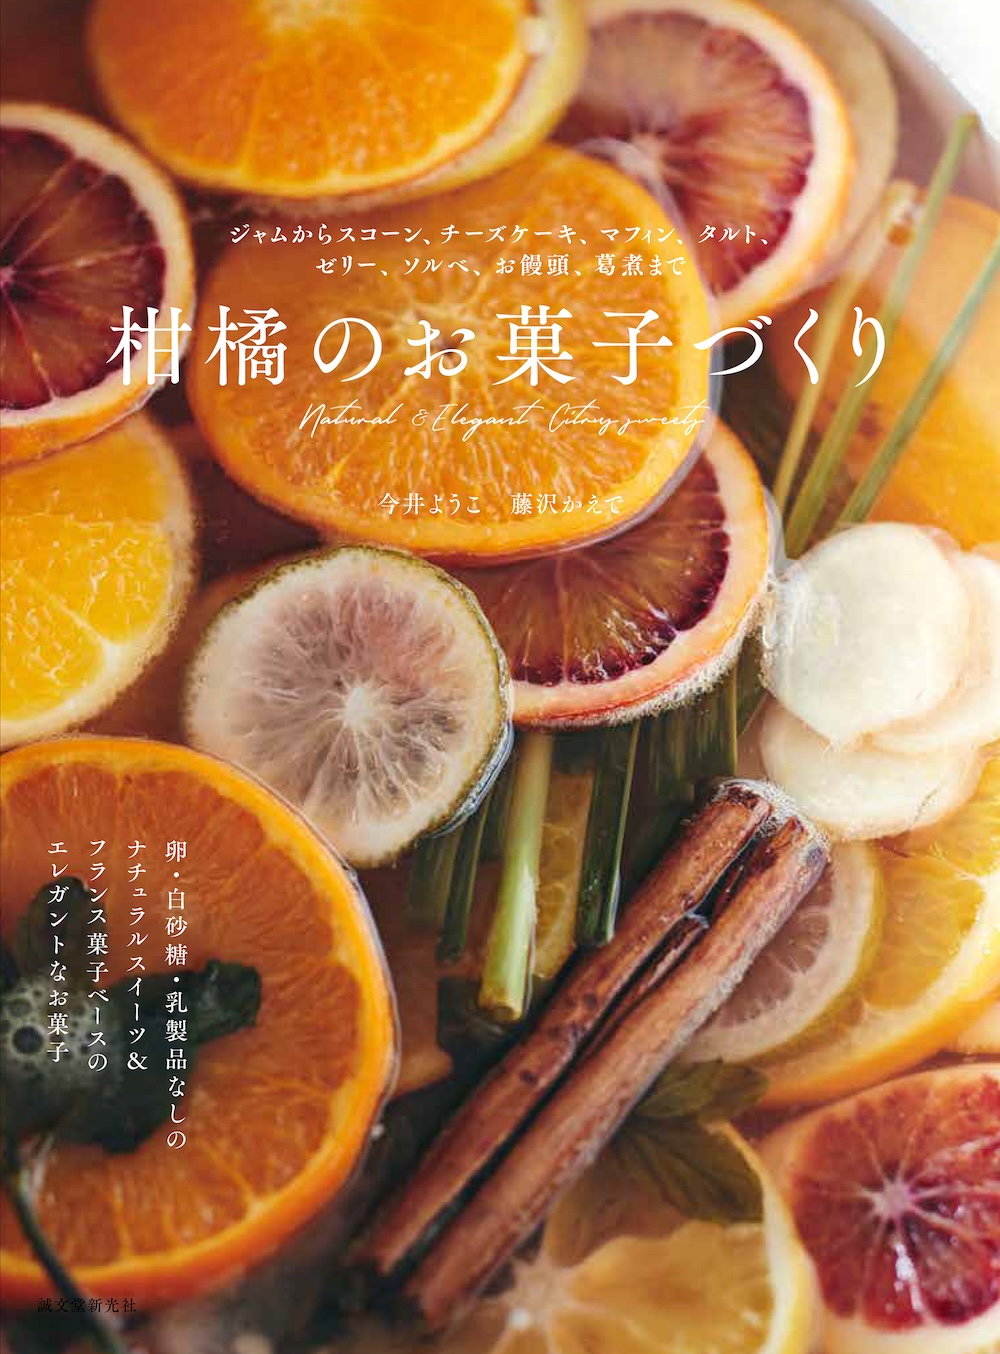 スイーツレシピ集「柑橘のお菓子づくり」表紙ビジュアル